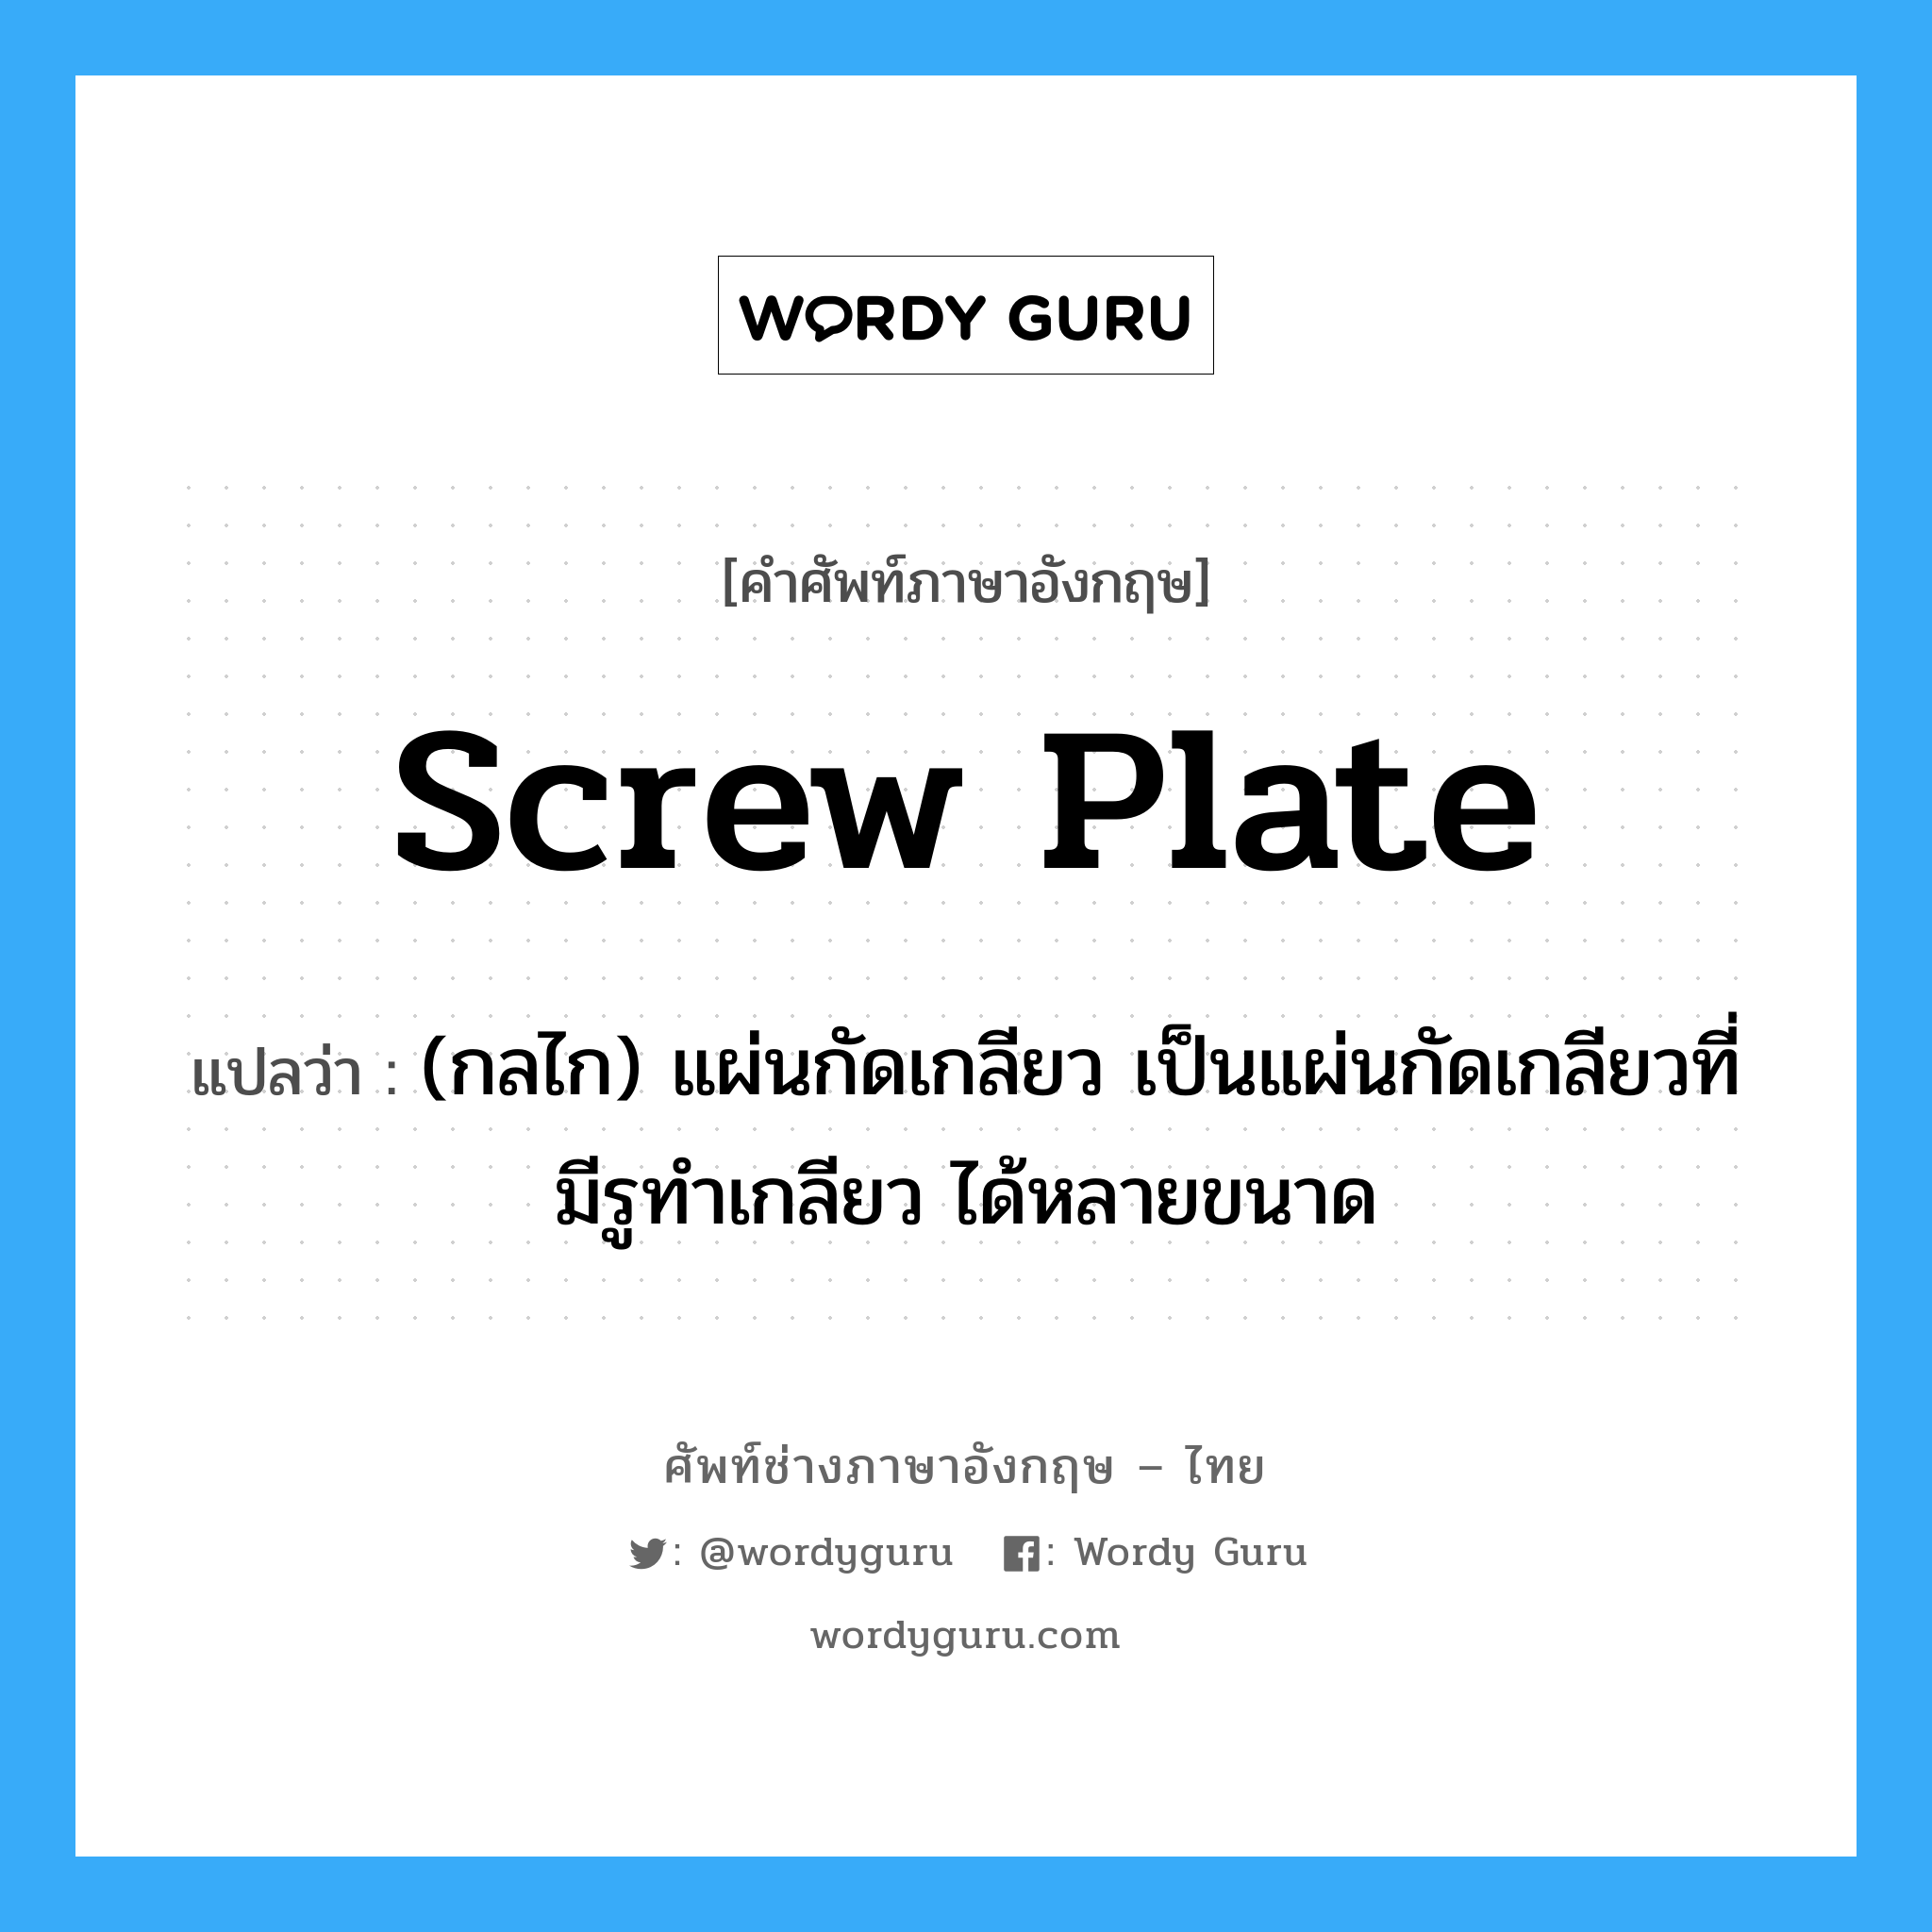 screw plate แปลว่า?, คำศัพท์ช่างภาษาอังกฤษ - ไทย screw plate คำศัพท์ภาษาอังกฤษ screw plate แปลว่า (กลไก) แผ่นกัดเกลียว เป็นแผ่นกัดเกลียวที่มีรูทำเกลียว ได้หลายขนาด